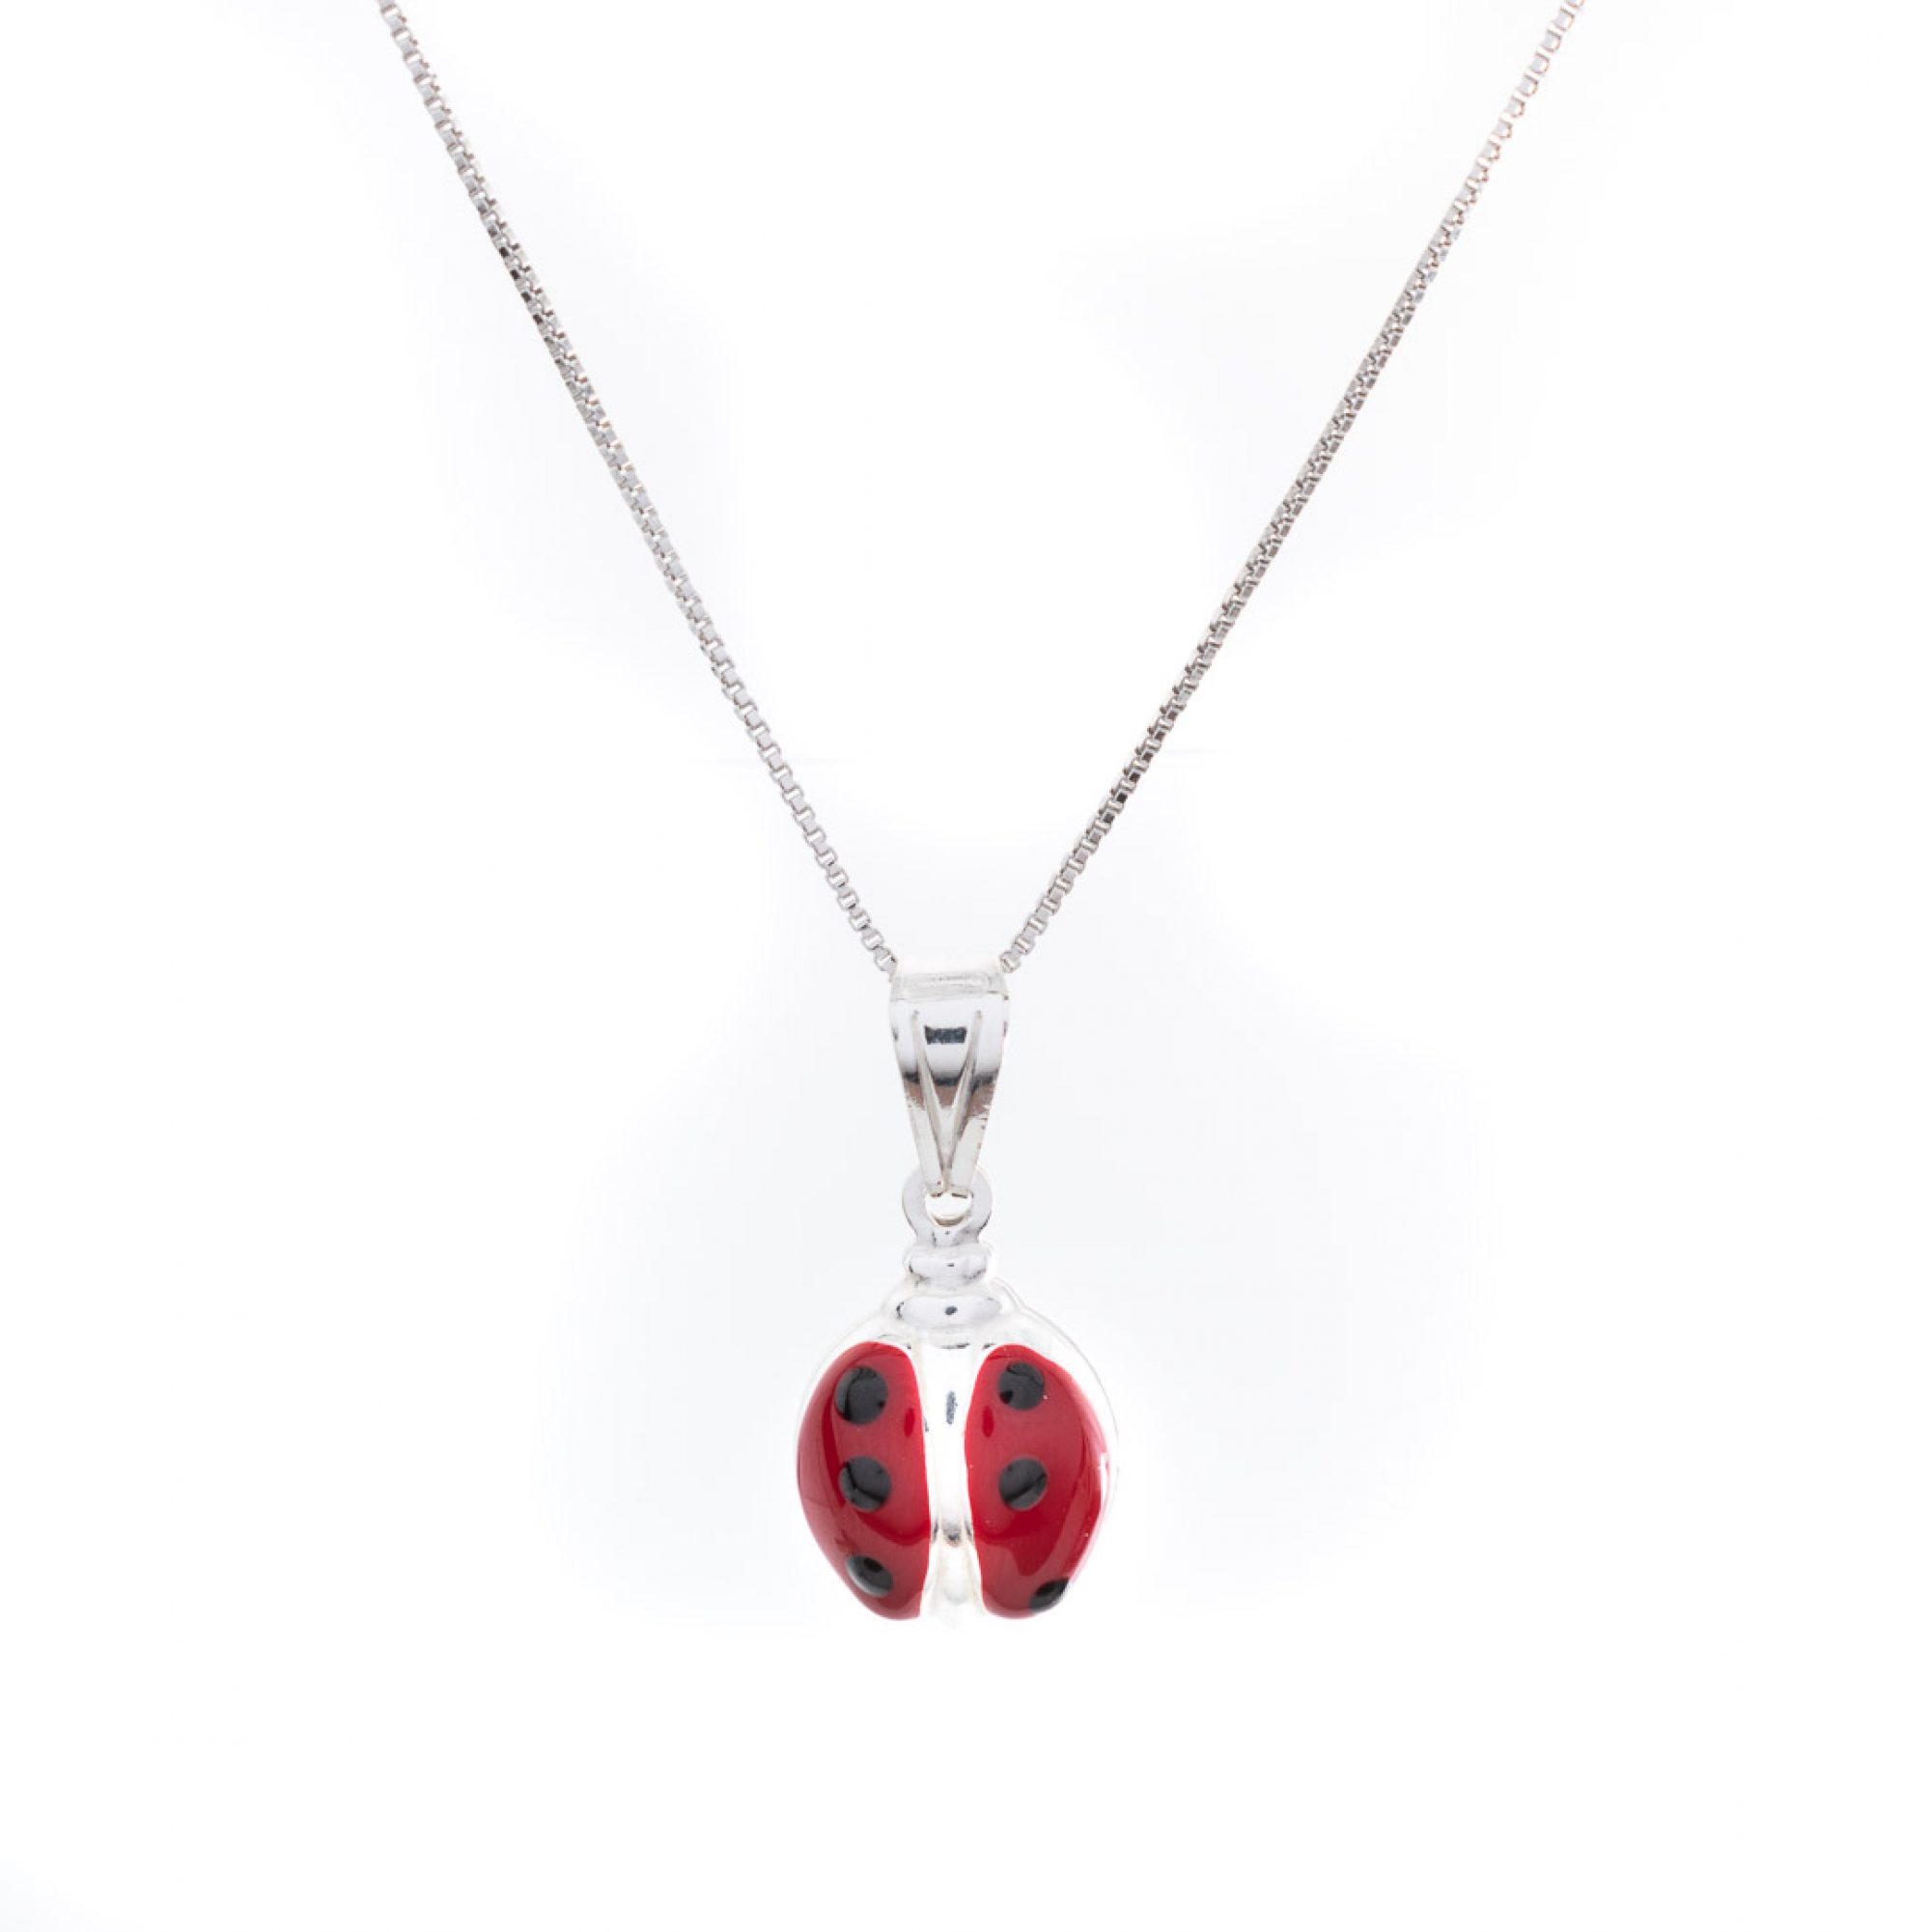 Ladybug necklace with enamel